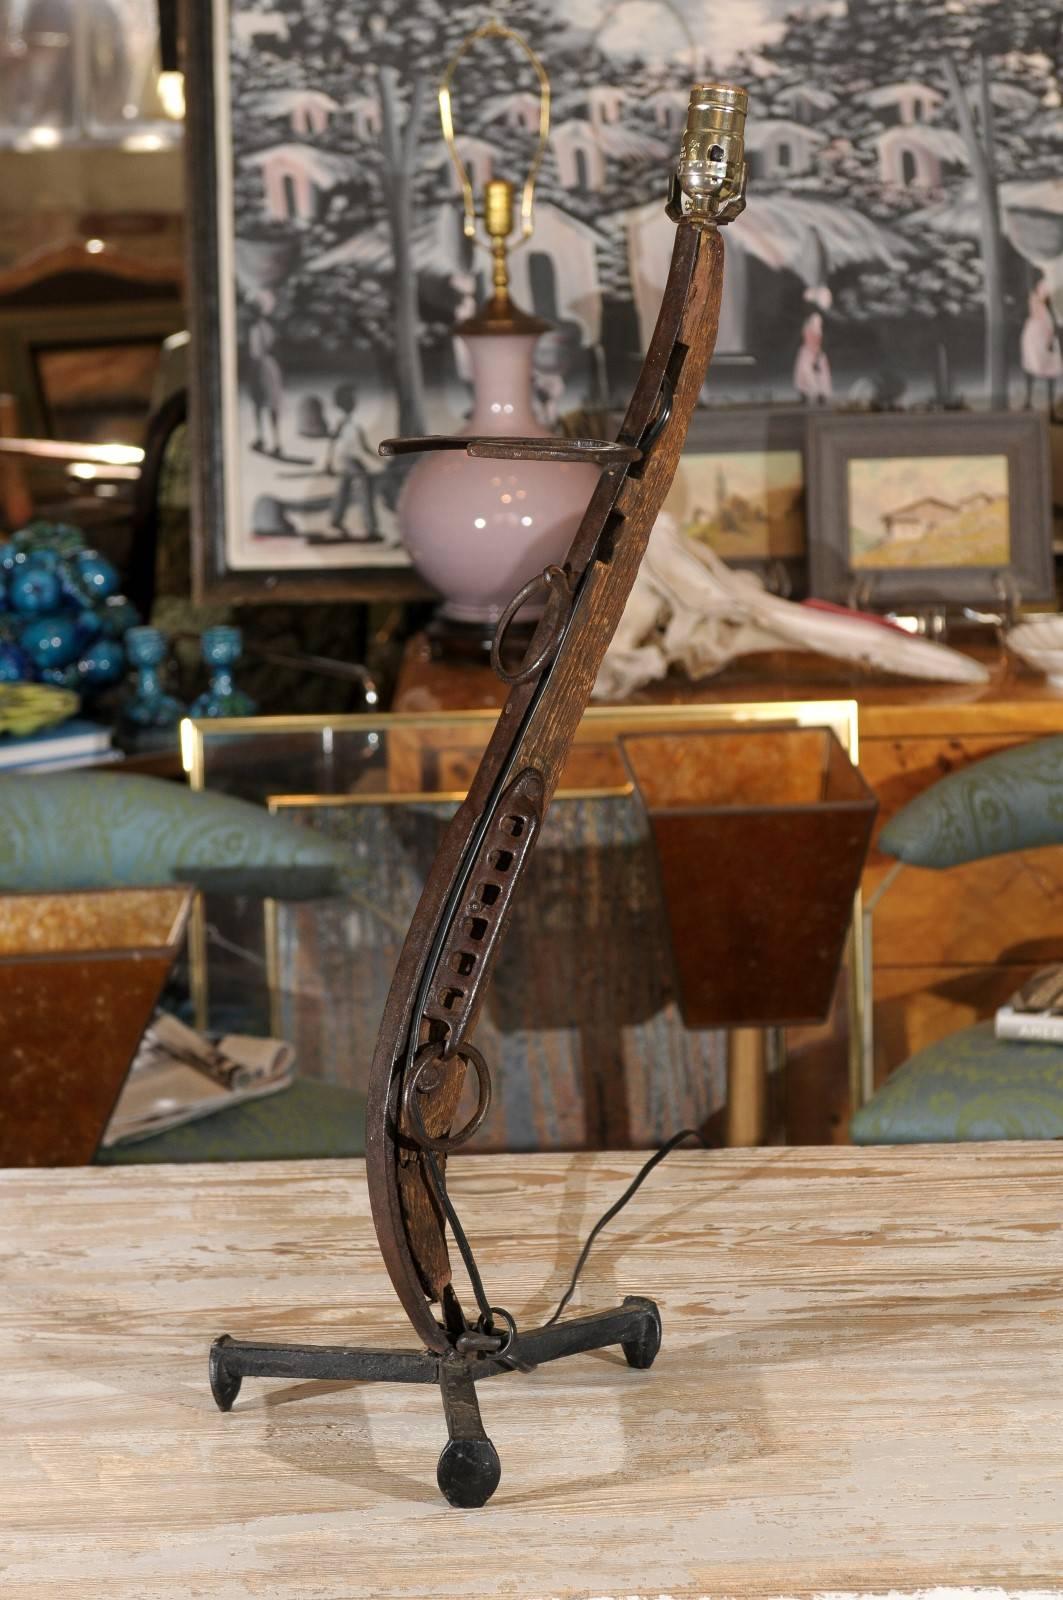 Vintage Folk Art Tischlampe, handgefertigt in Form eines Gewehrs aus Treibholz und Schmiedeeisen, mit einem antiken Hufeisen als Visier.